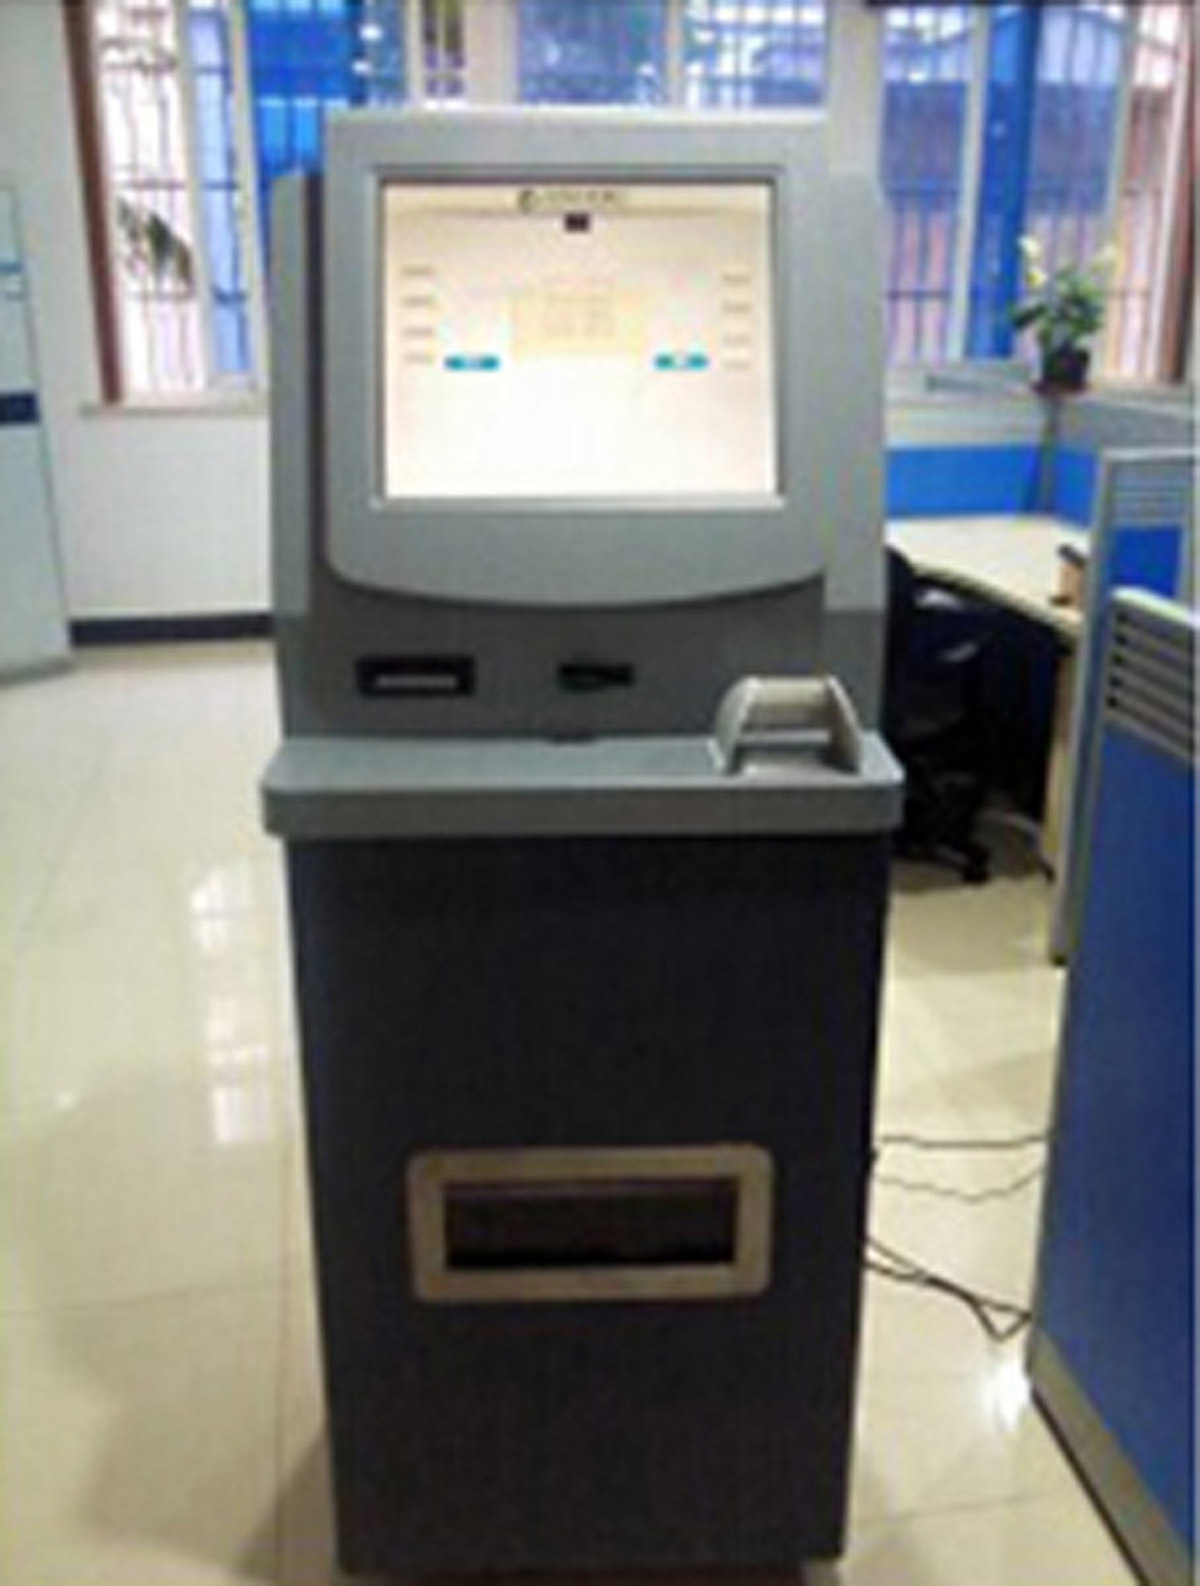 佳木斯模拟安全模拟ATM提款操作